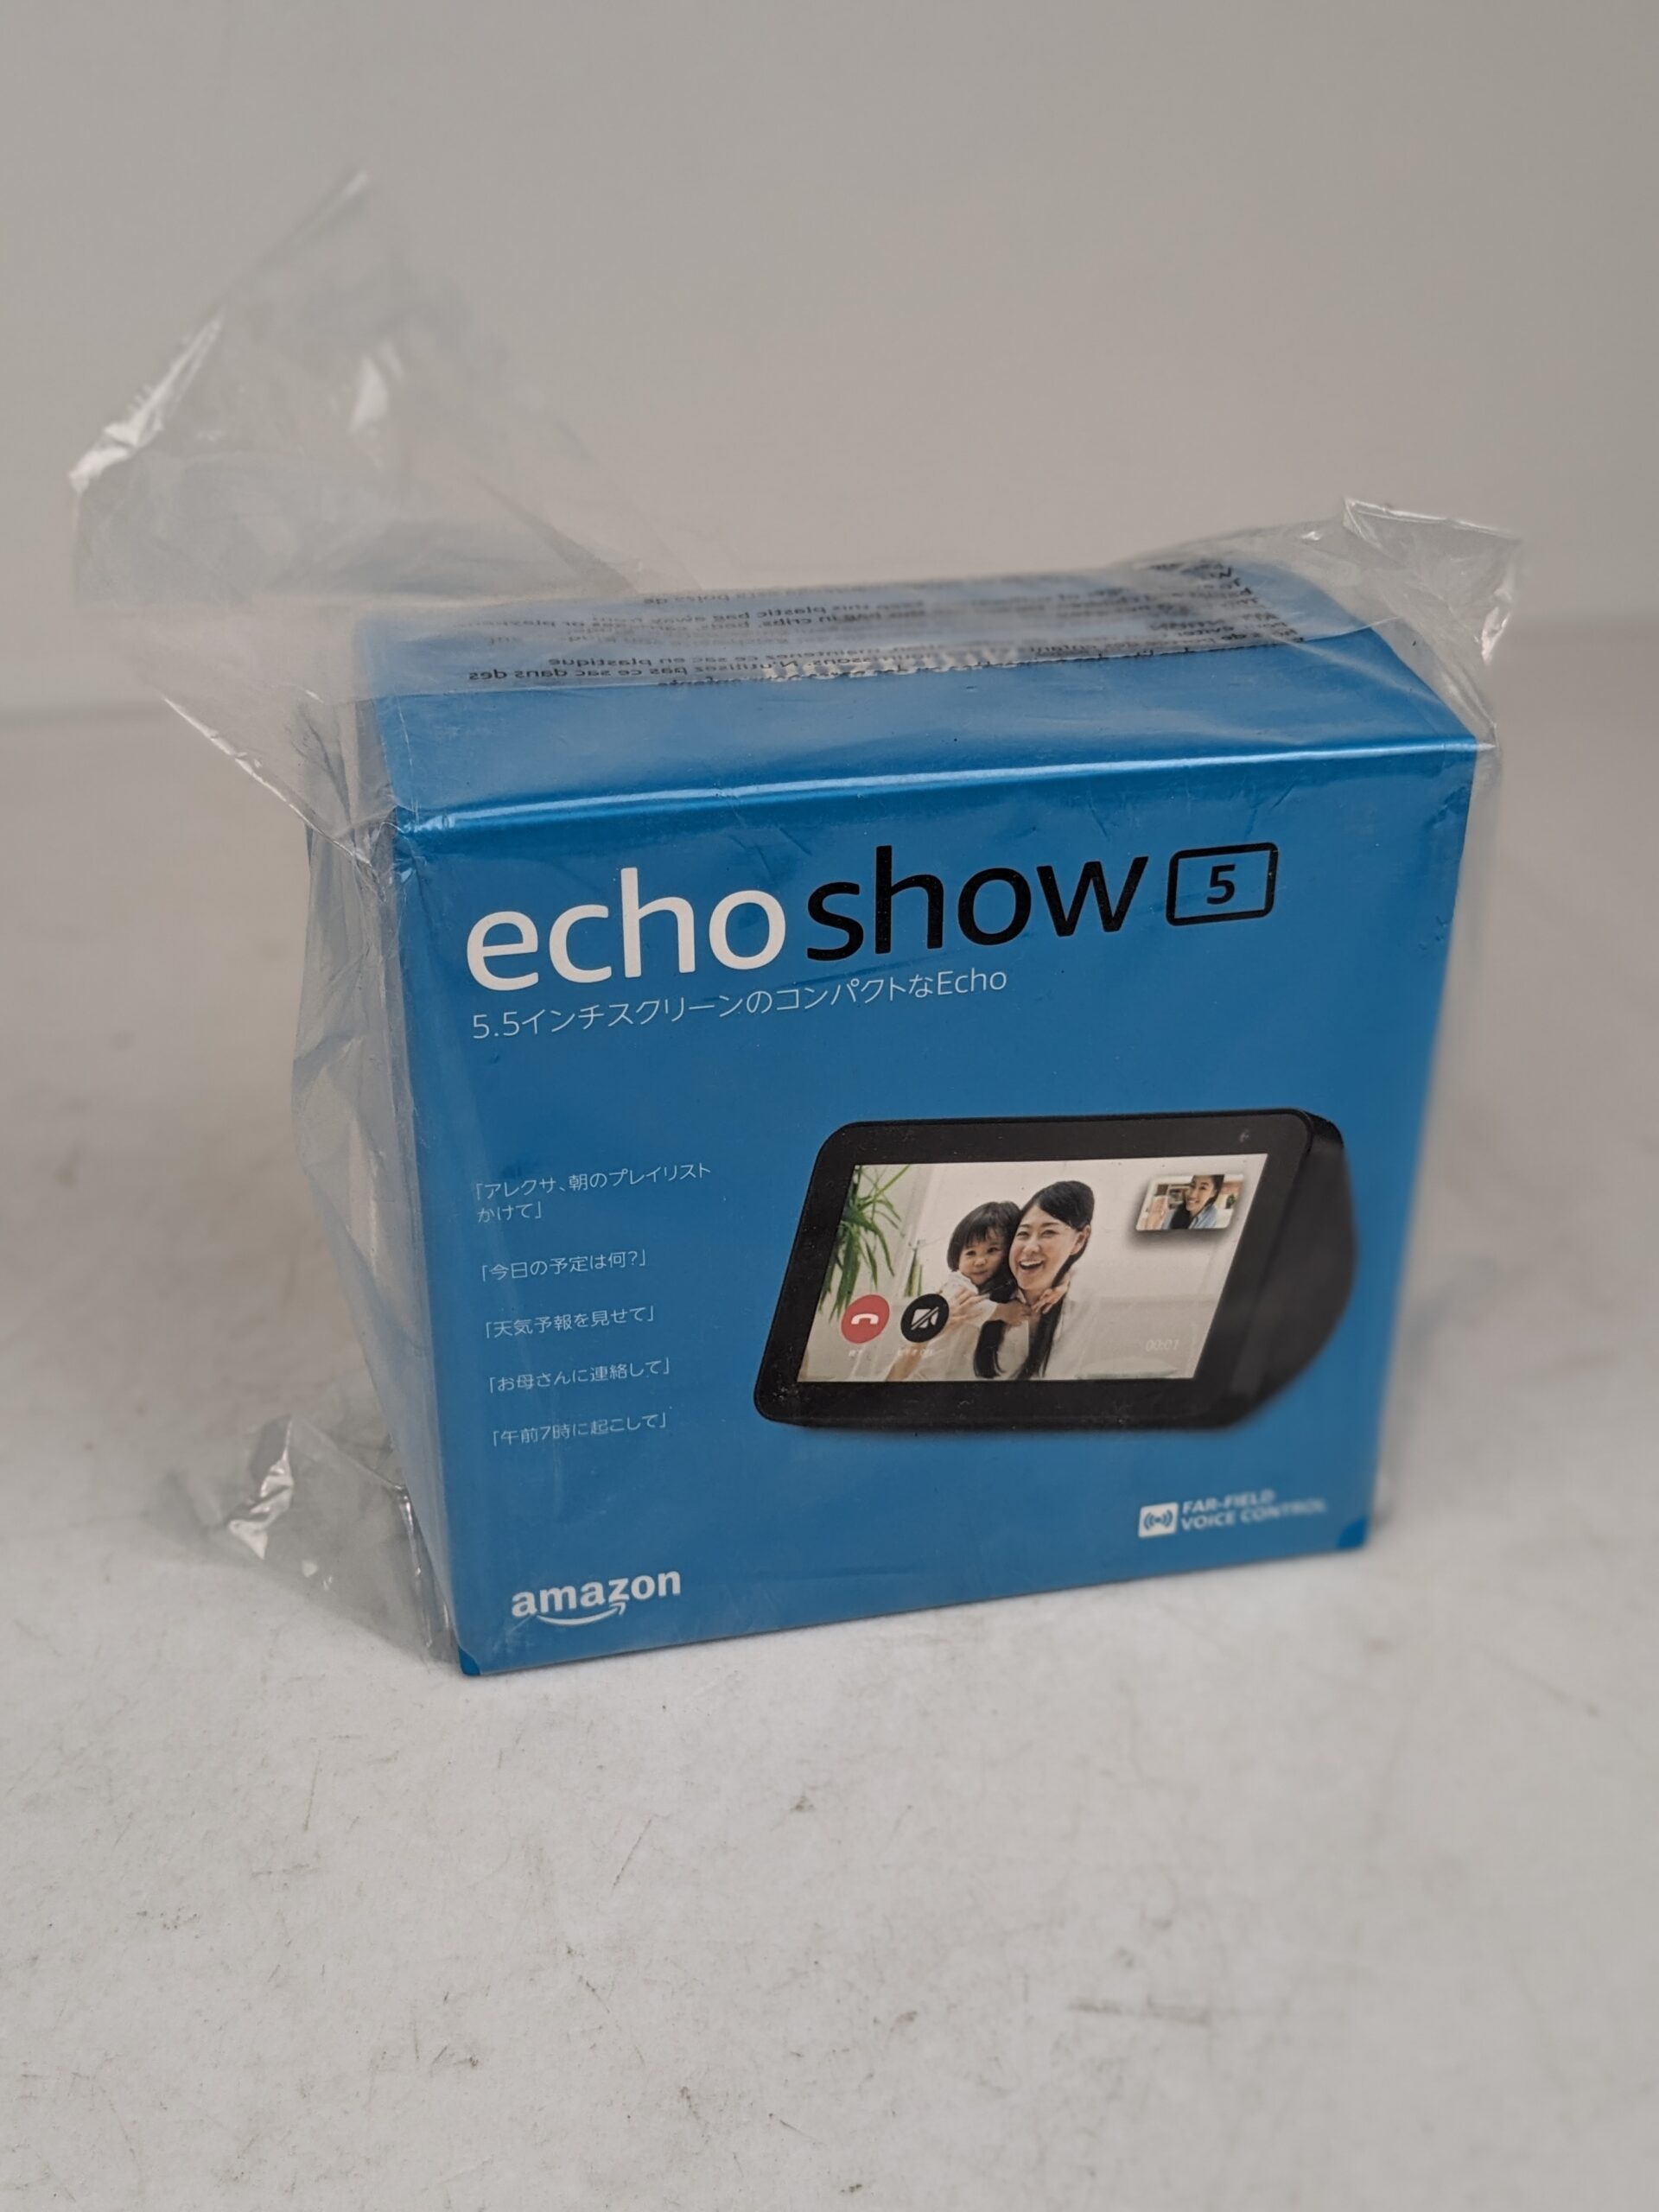 Echo Show 5 (エコーショー5) 第2世代 スマートディスプレイ with Alexa